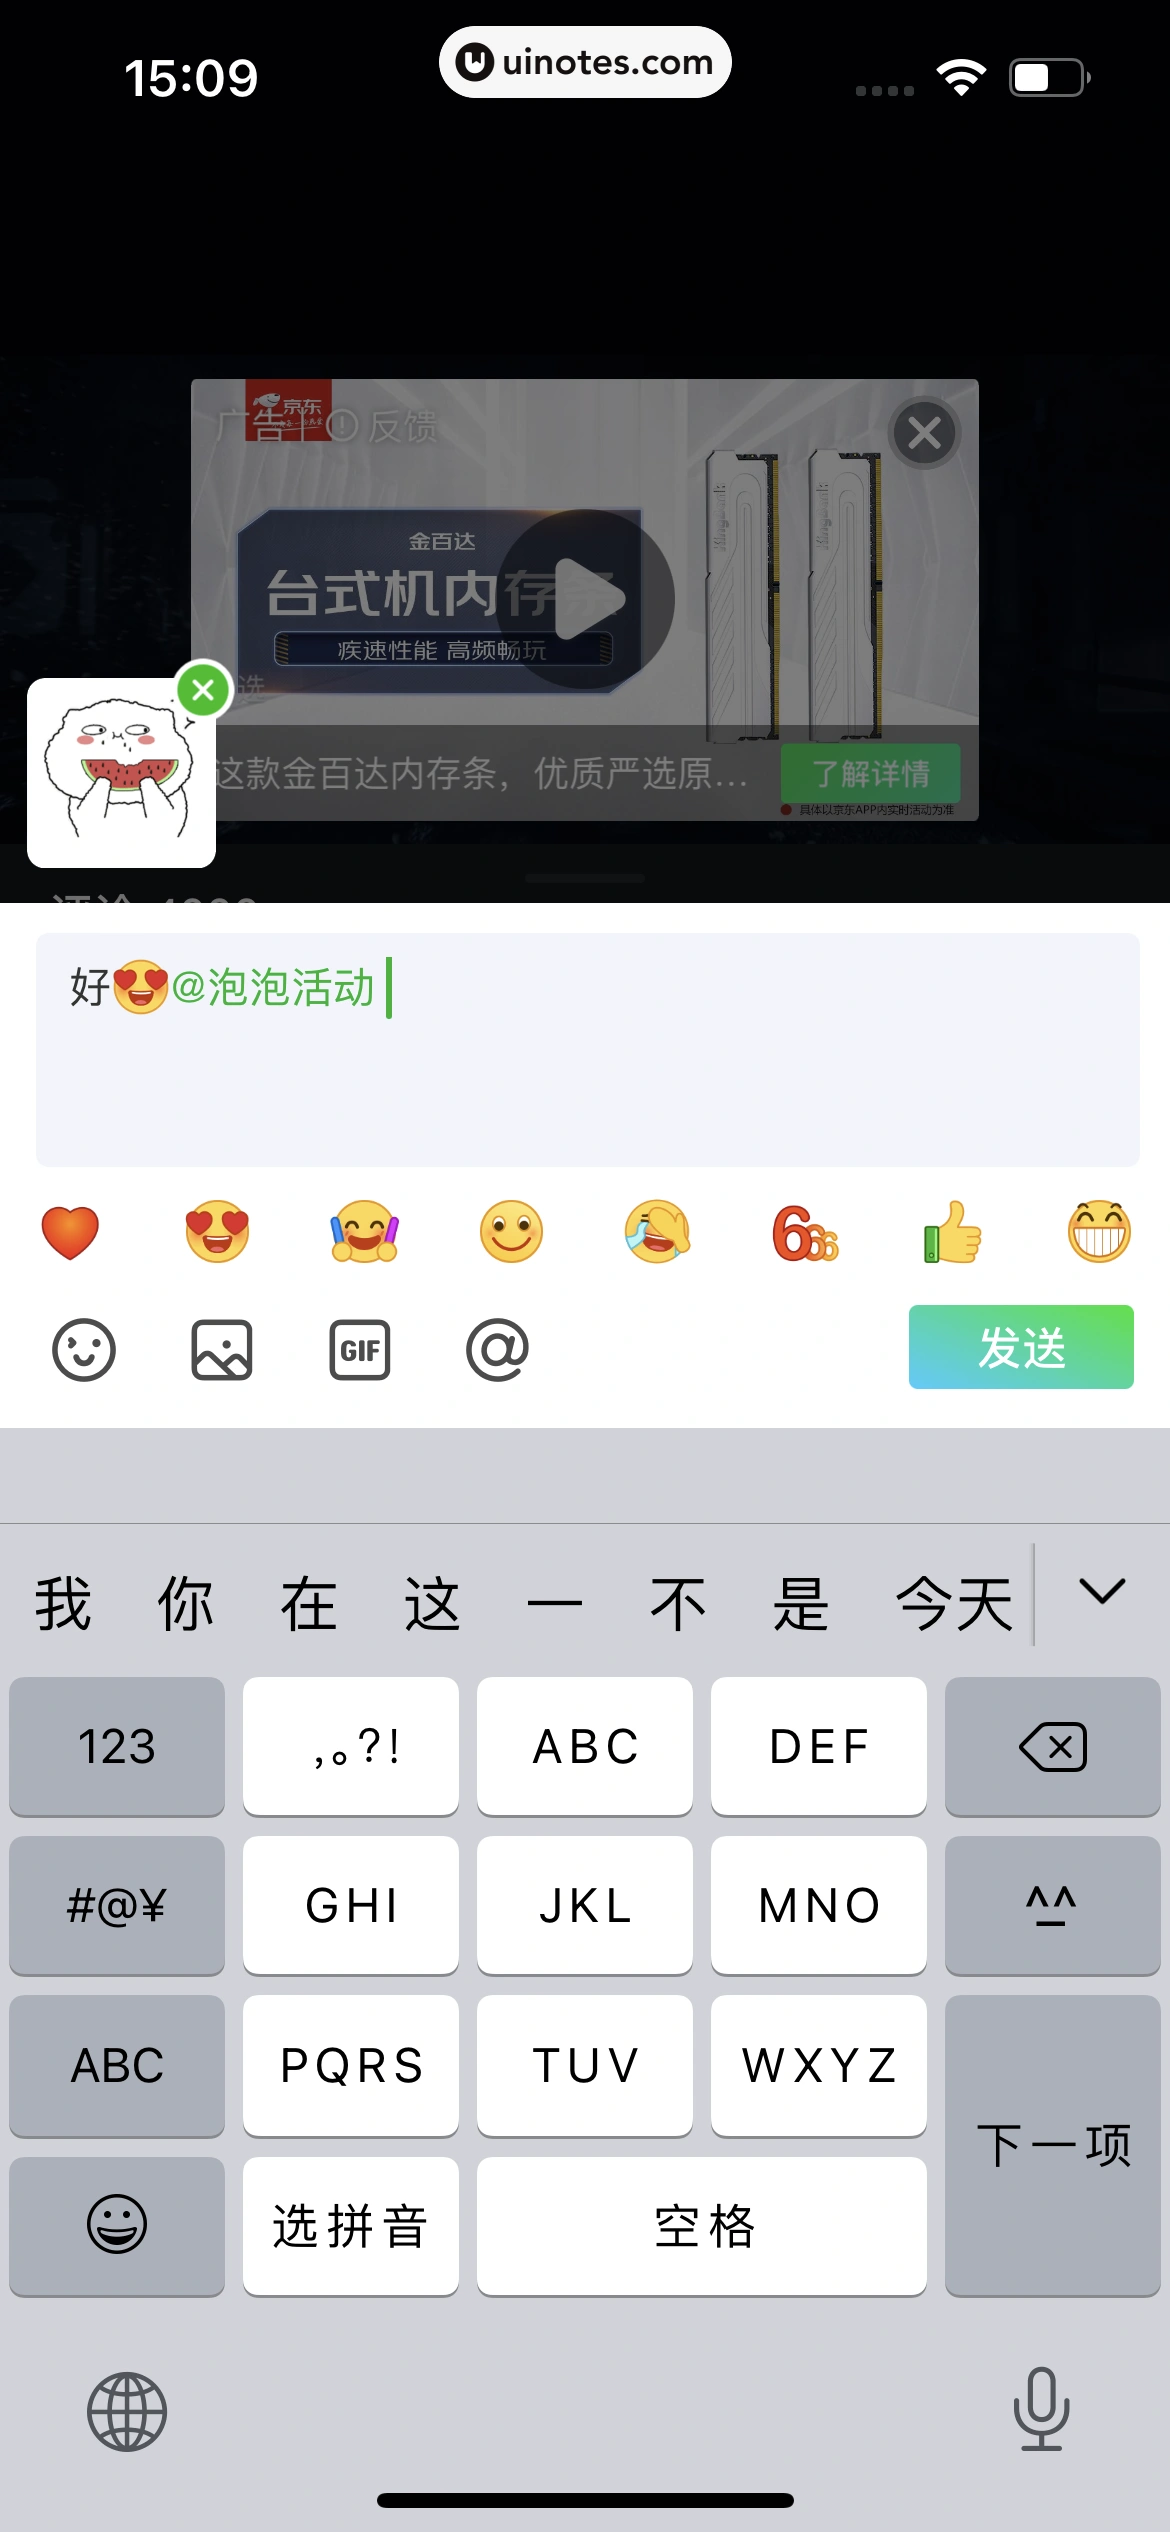 爱奇艺 App 截图 051 - UI Notes